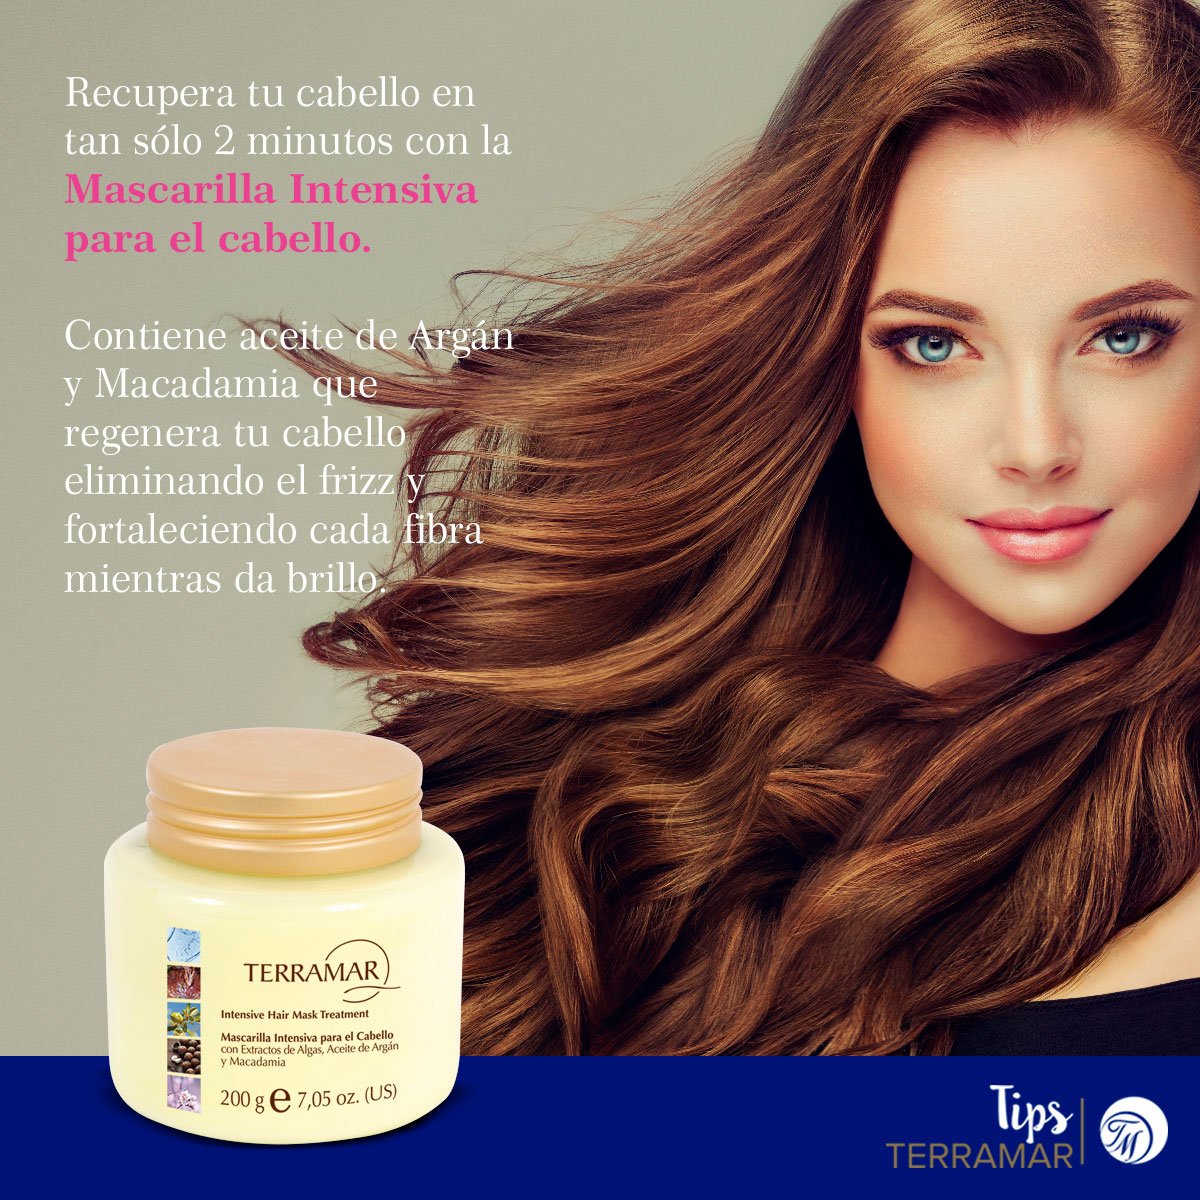 Terramar Brands México Twitter: "La mascarilla preferida de las #ChicasTerramar para el cuidado capilar. 😉 Sus ingredientes de origen natural nutren y fortalecen el cabello dejándolo hermoso. Encuéntrala en el